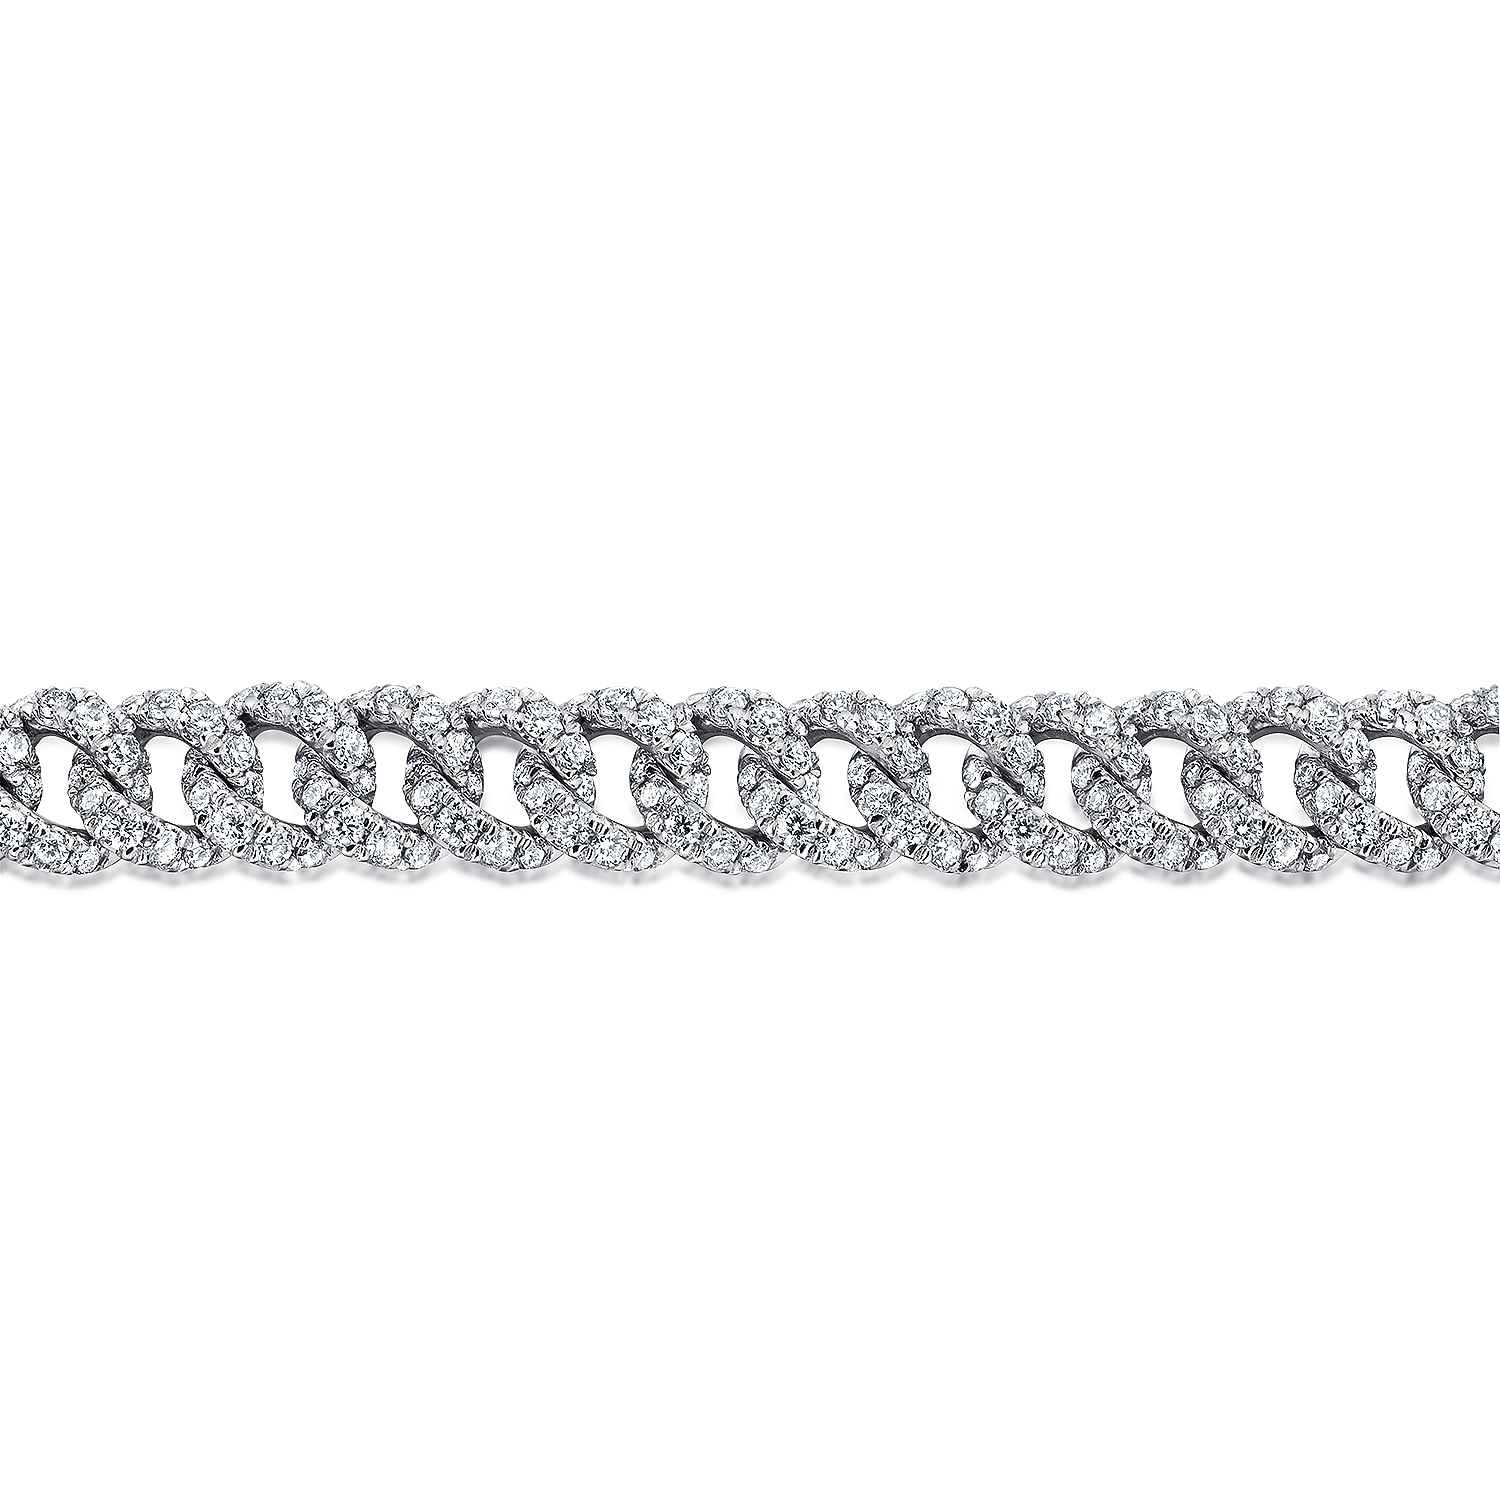 14K White Gold Diamond Link Tennis Bracelet